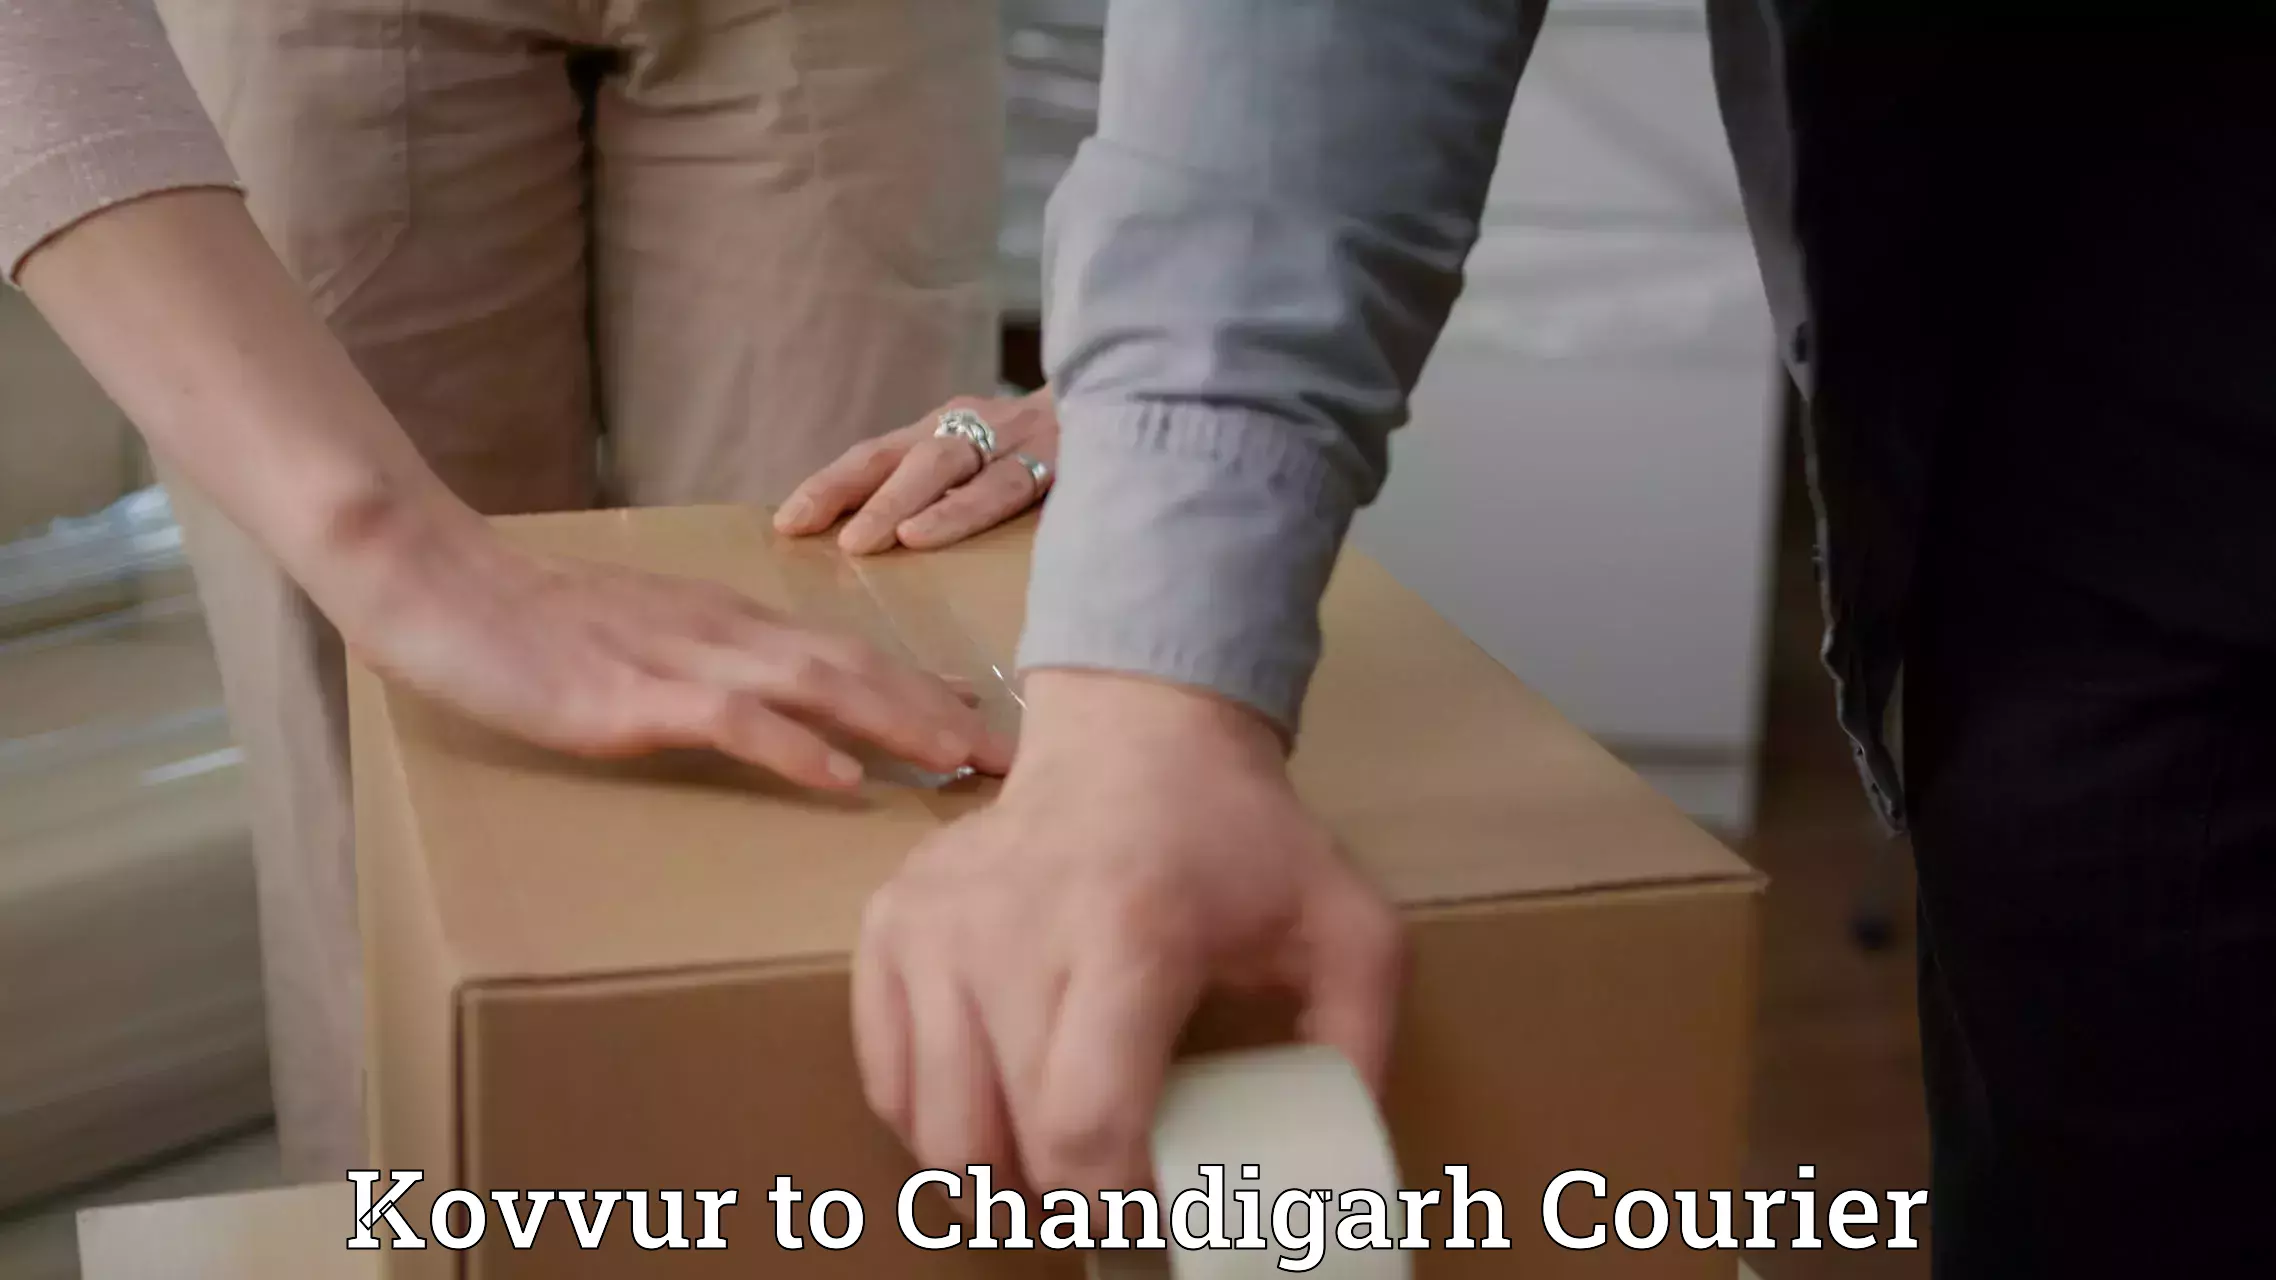 Urgent courier needs Kovvur to Chandigarh